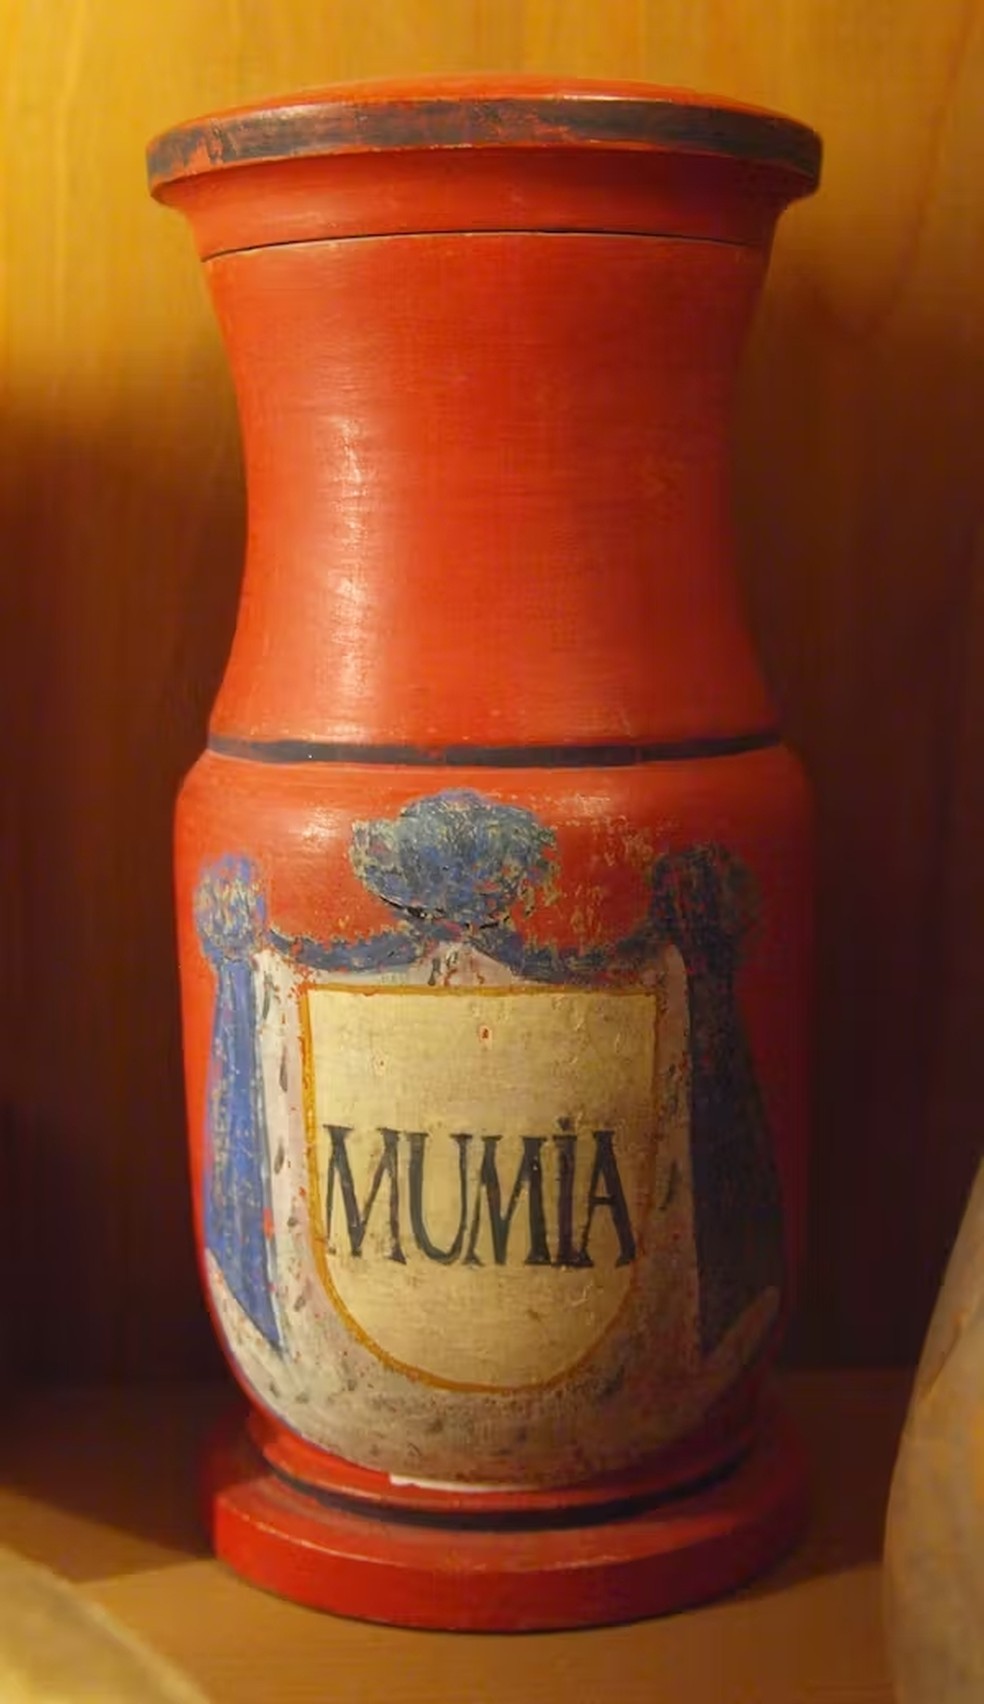 Frasco usado para armazenar múmia, um remédio feito a partir dos restos mortais de humanos mumificados — Foto: Wikimedia Commons